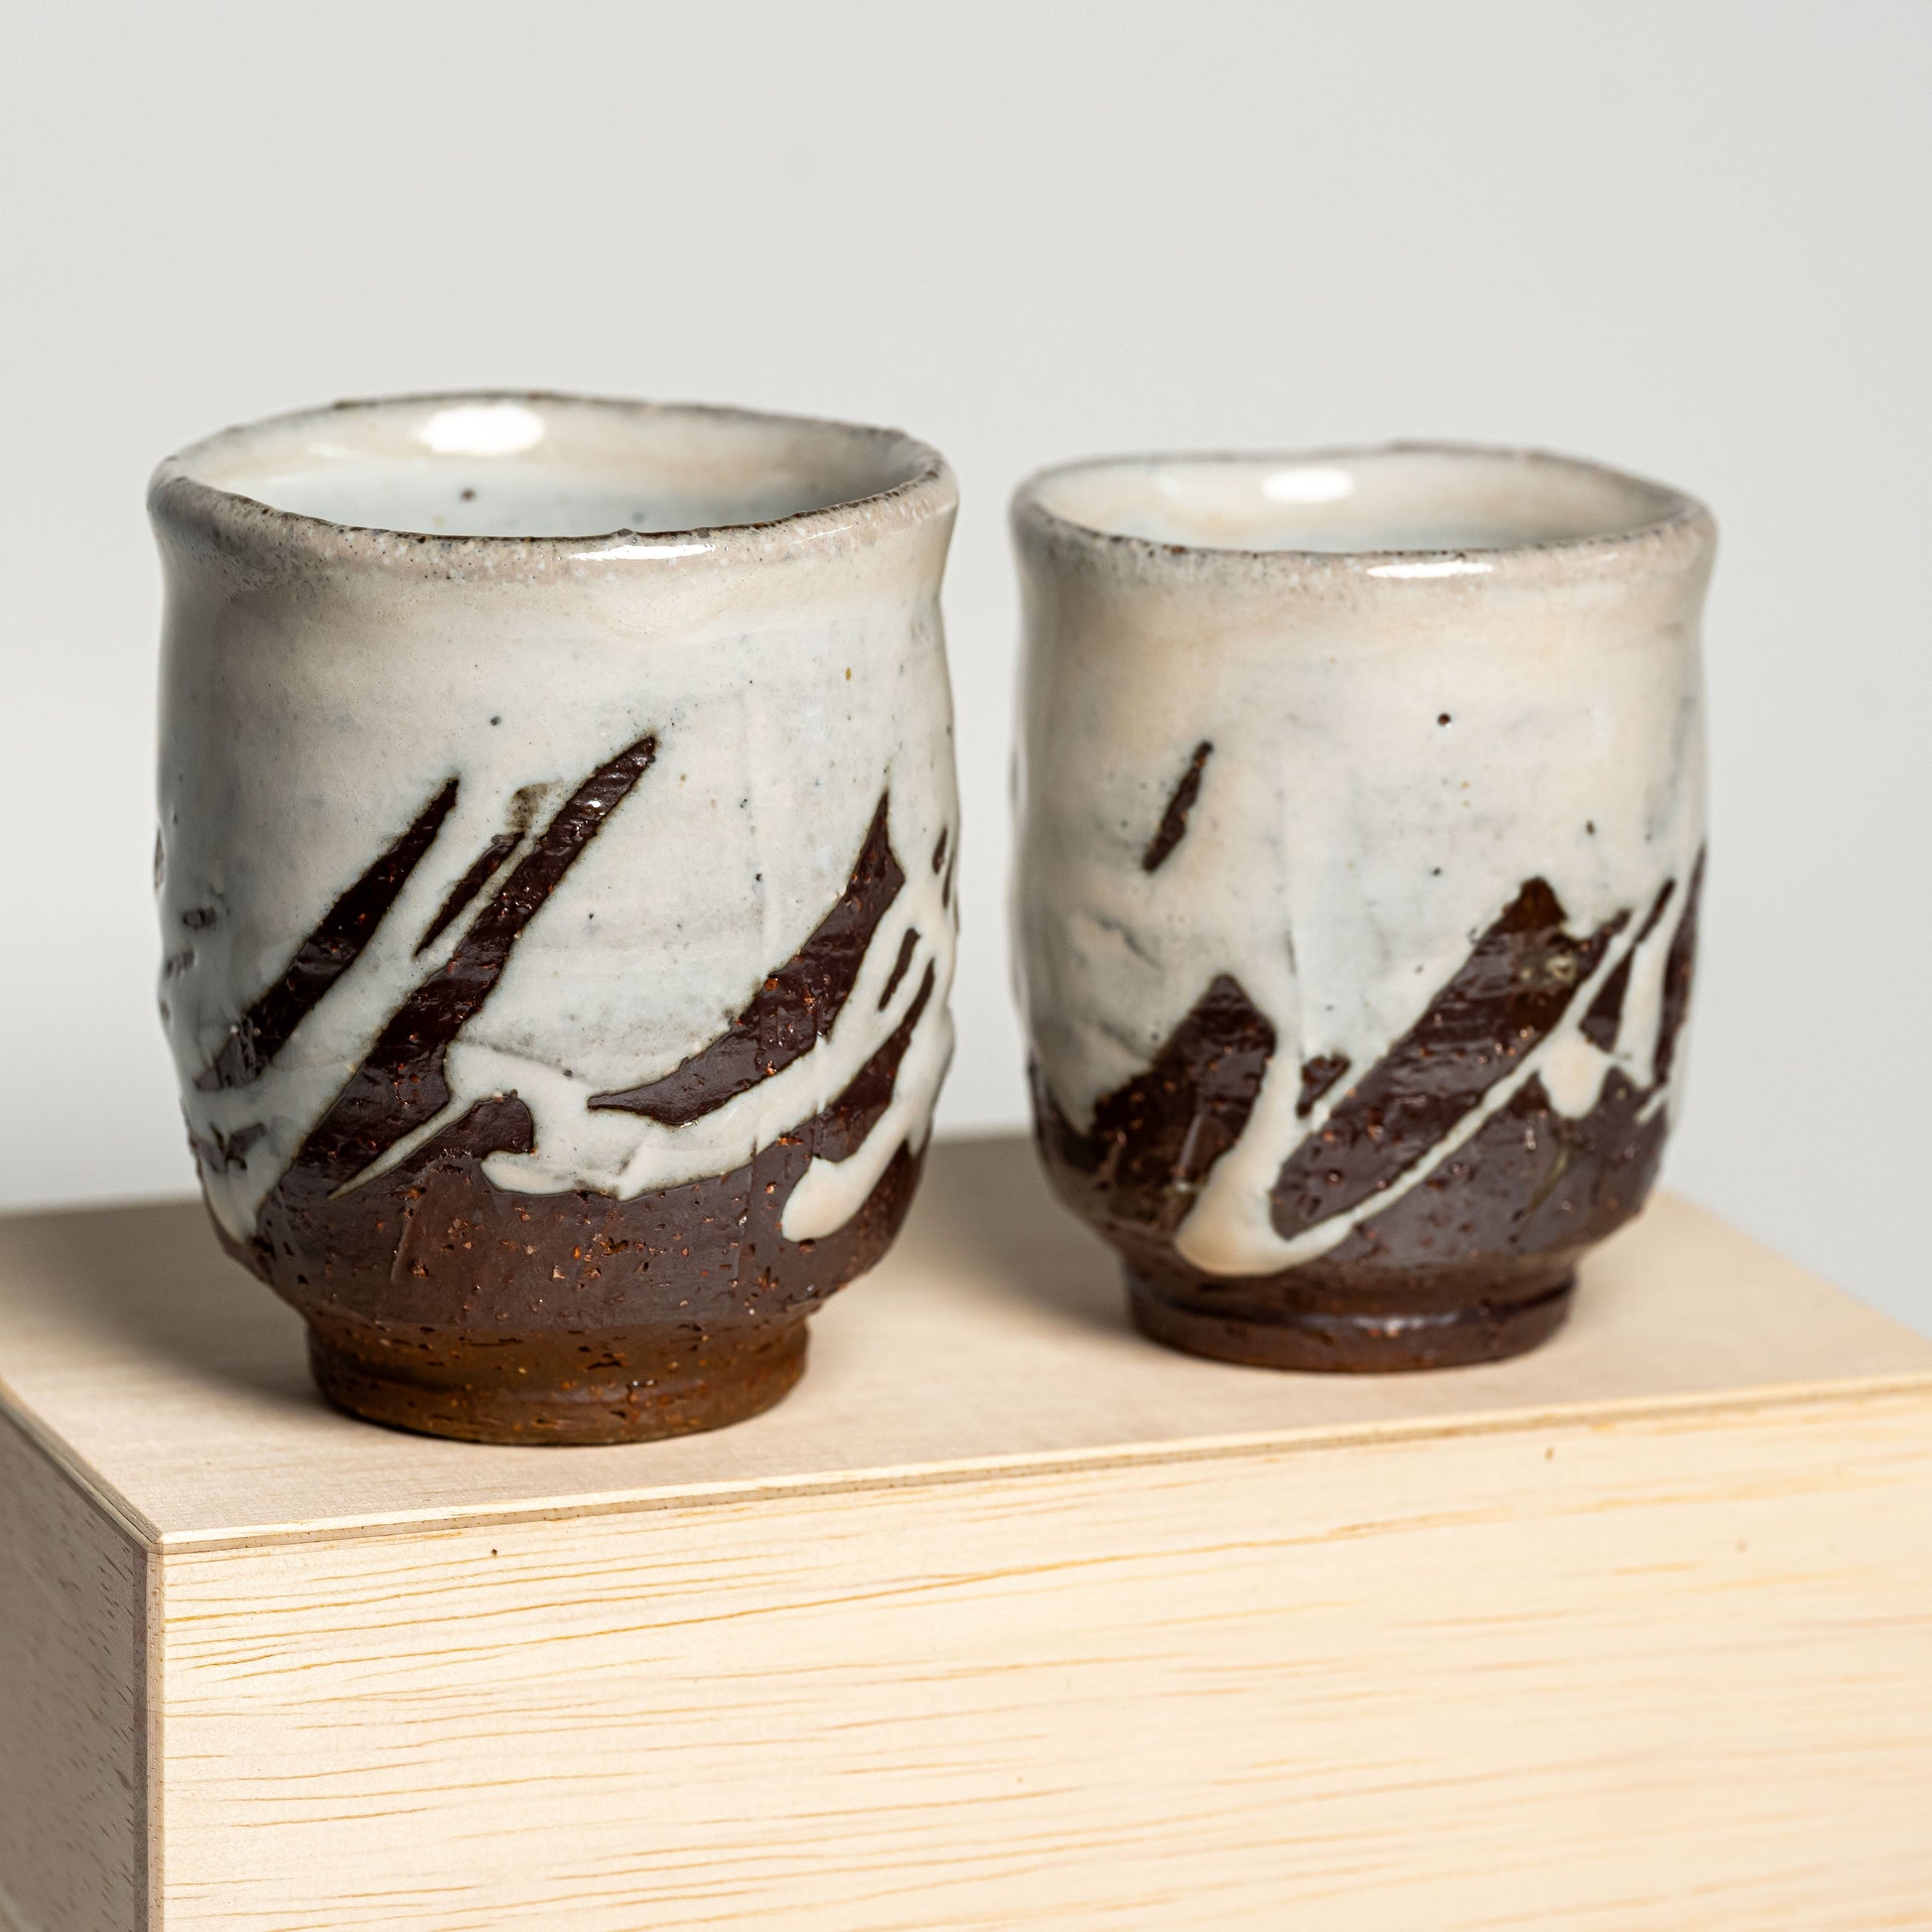 White Hagi yaki teacups on their wooden box on a white background